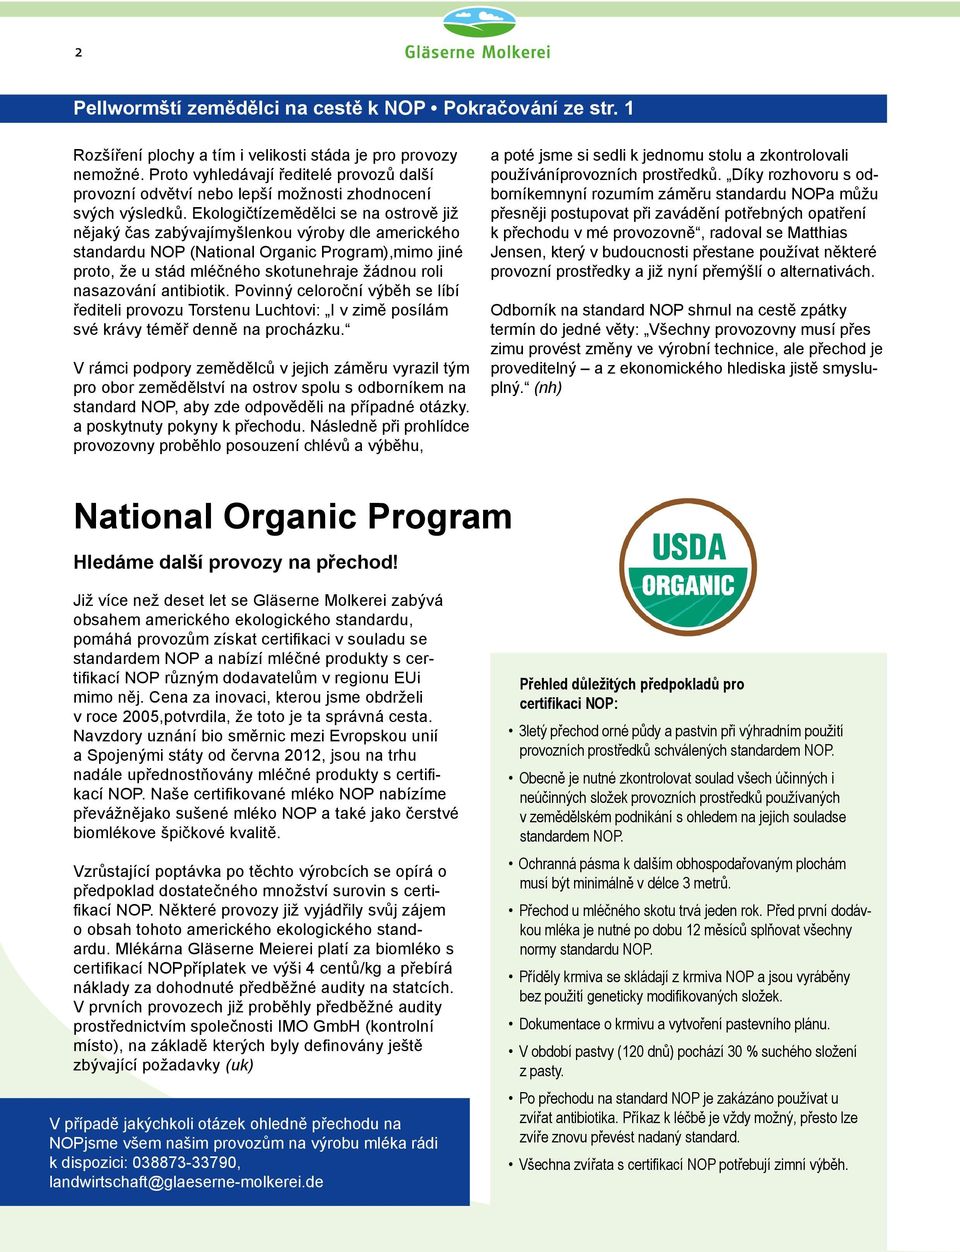 Ekologičtízemědělci se na ostrově již nějaký čas zabývajímyšlenkou výroby dle amerického standardu NOP (National Organic Program),mimo jiné proto, že u stád mléčného skotunehraje žádnou roli